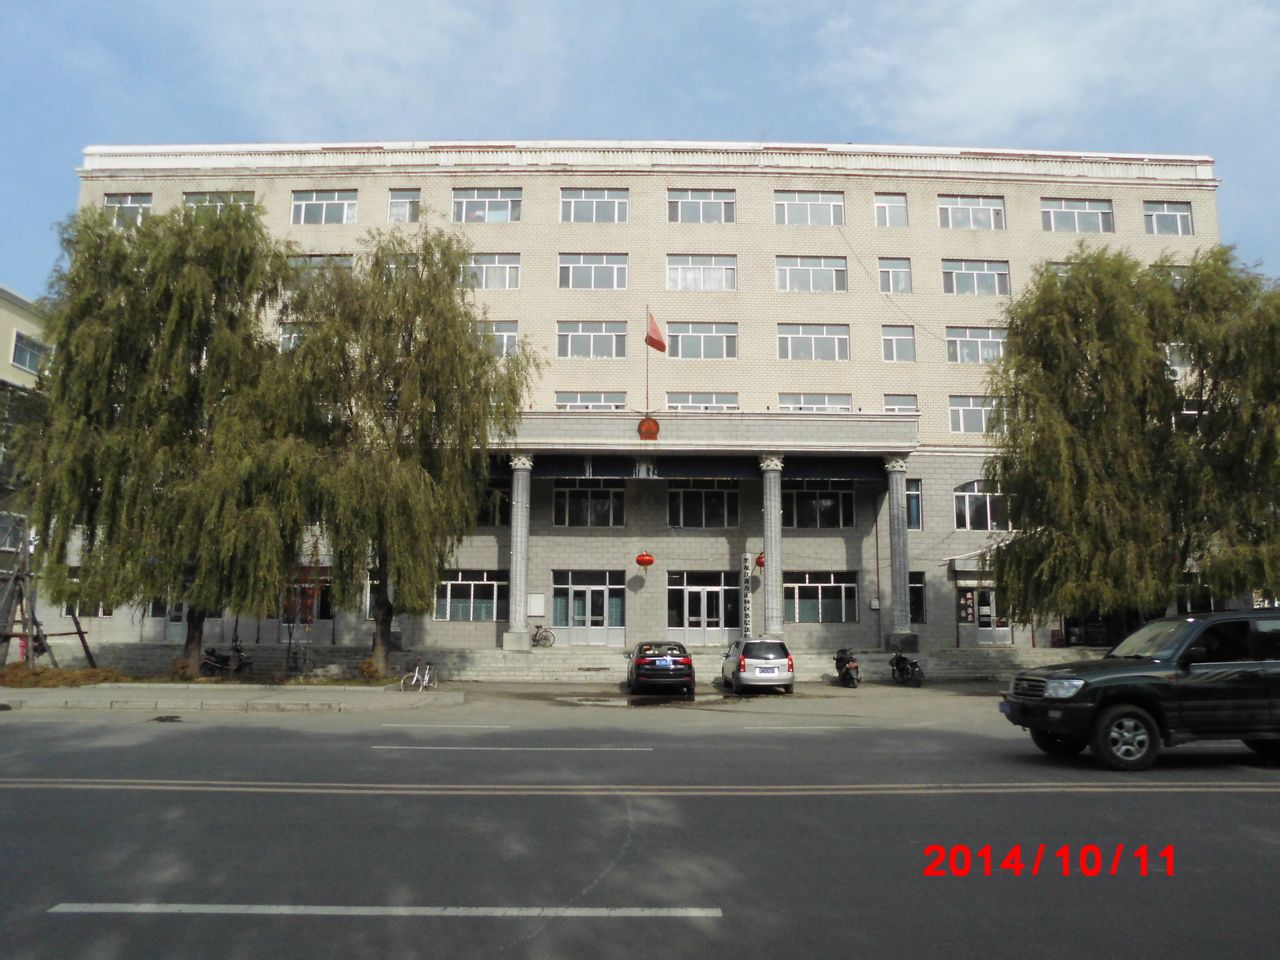 黑龍江省方正林區基層法院